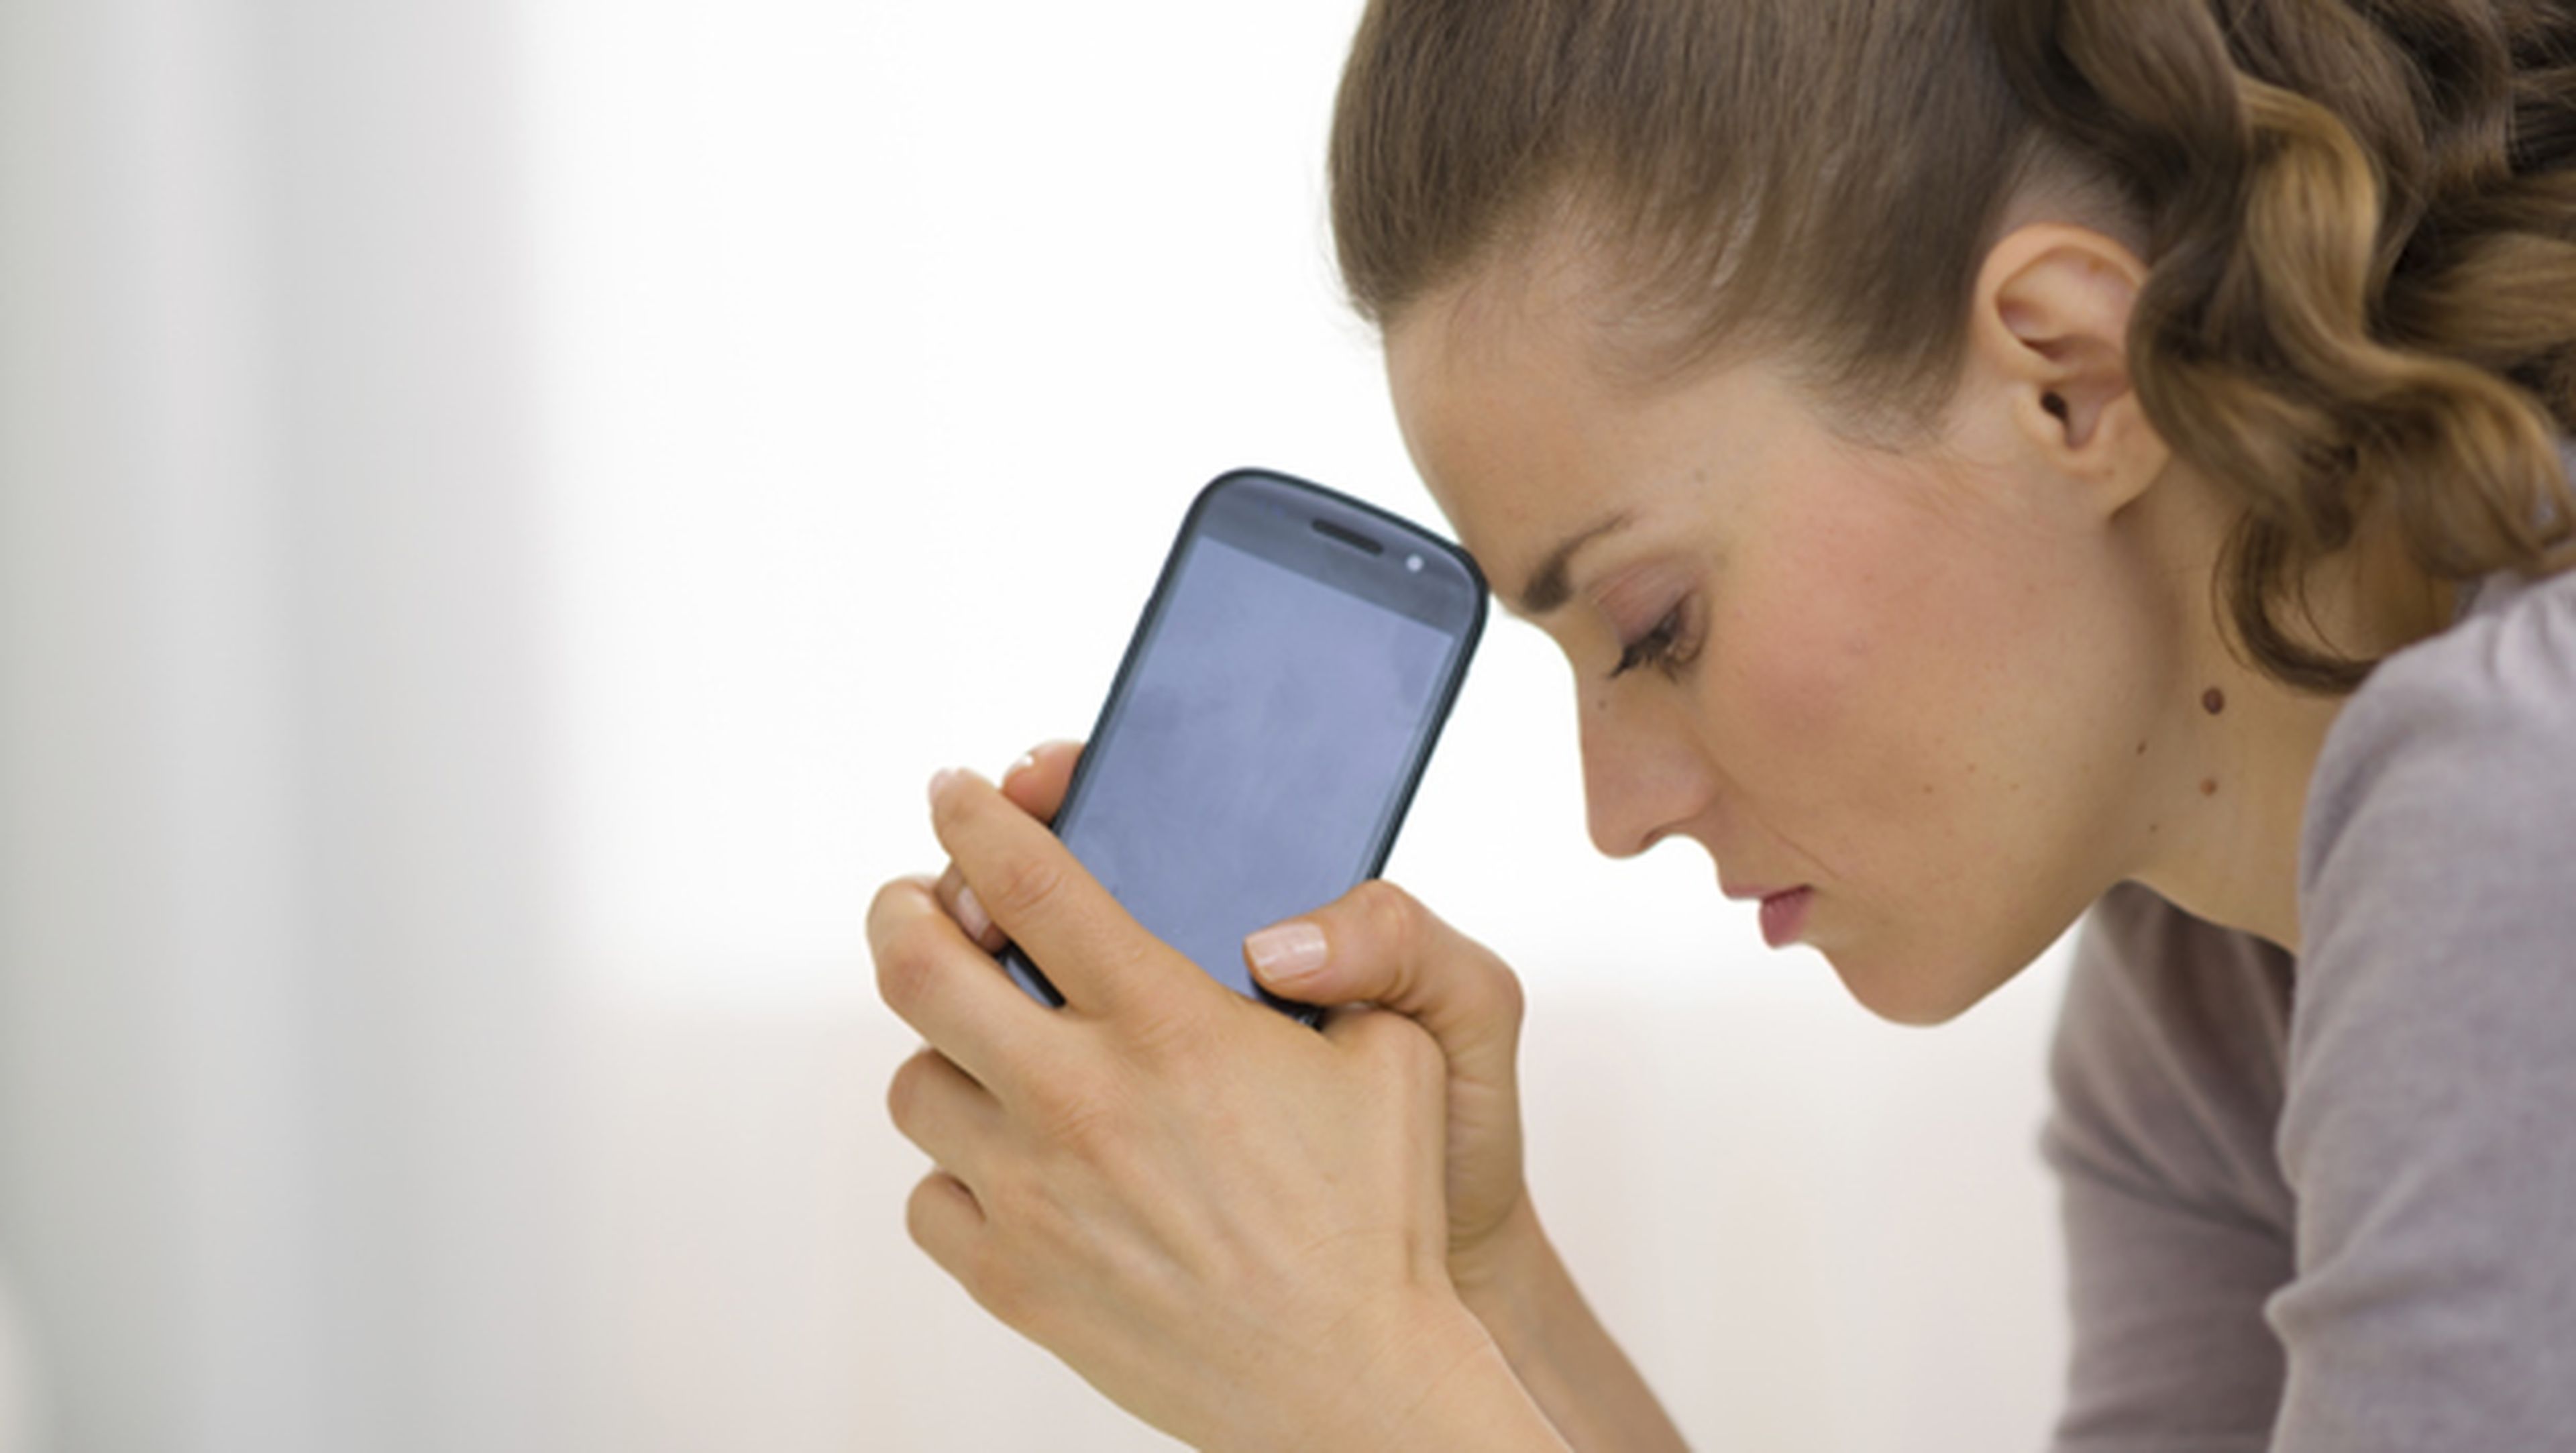 Tu teléfono móvil sabe si estás deprimido, según un estudio